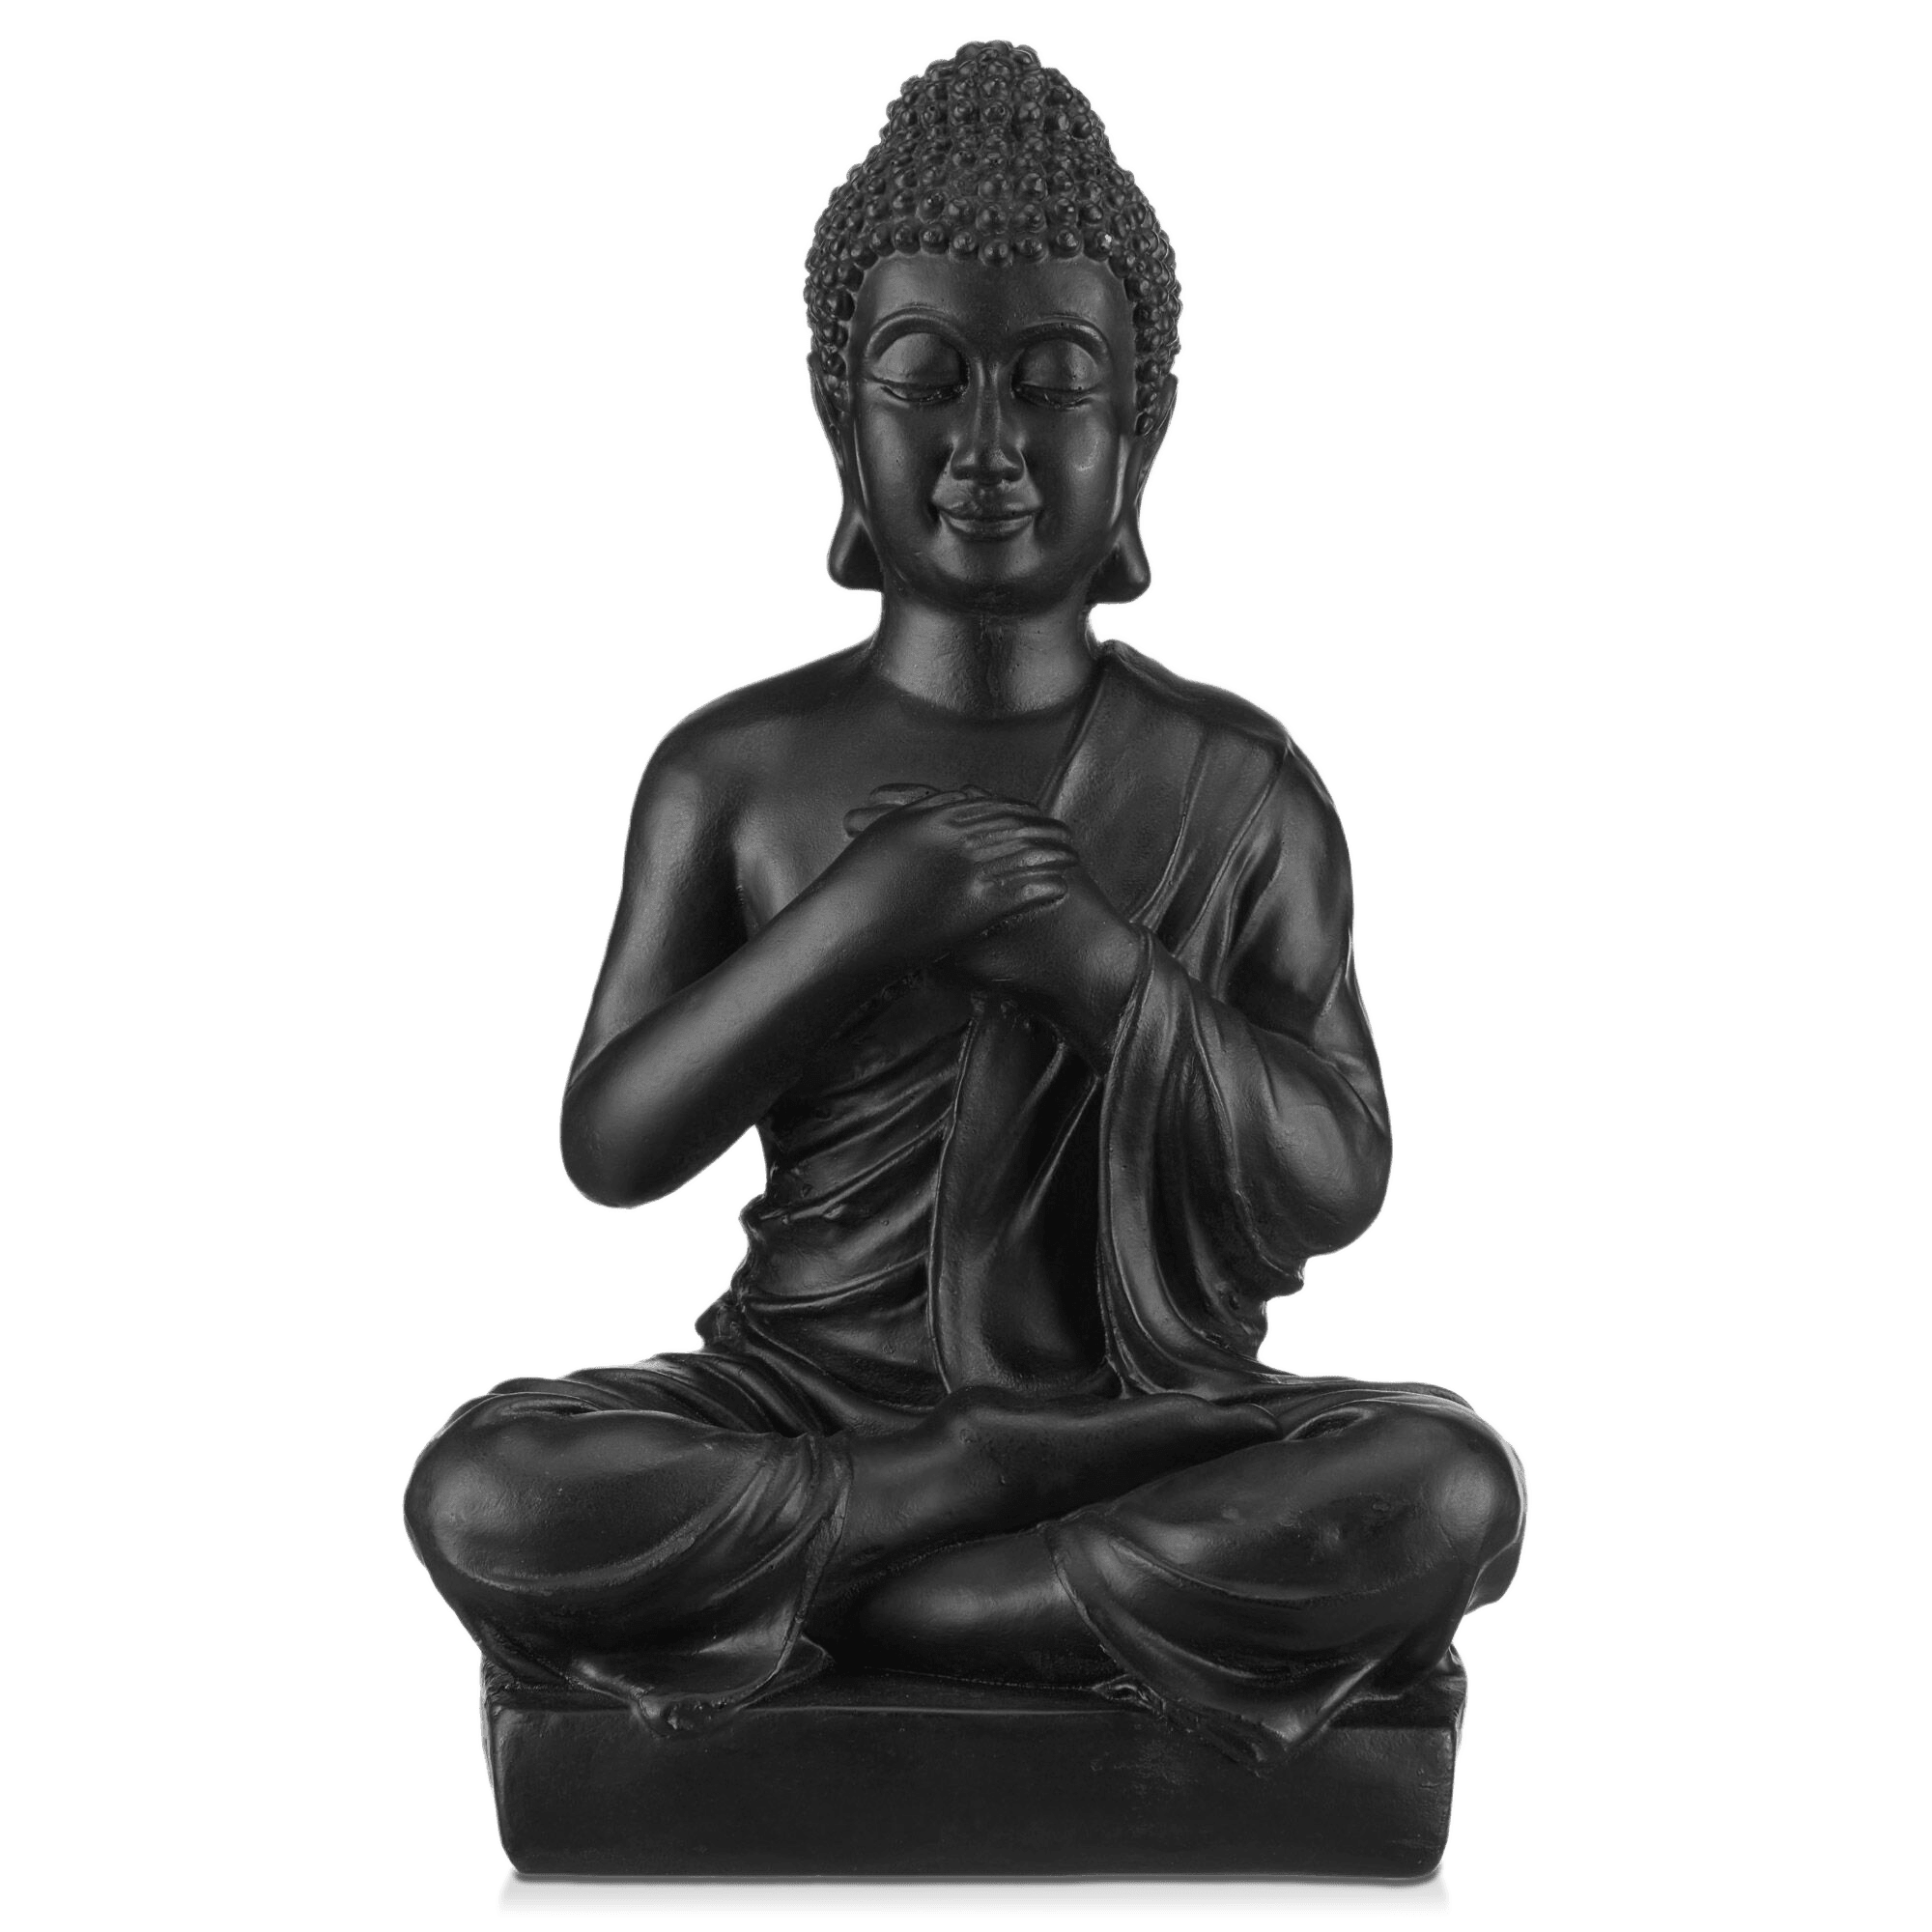 Statue de Bouddha noire